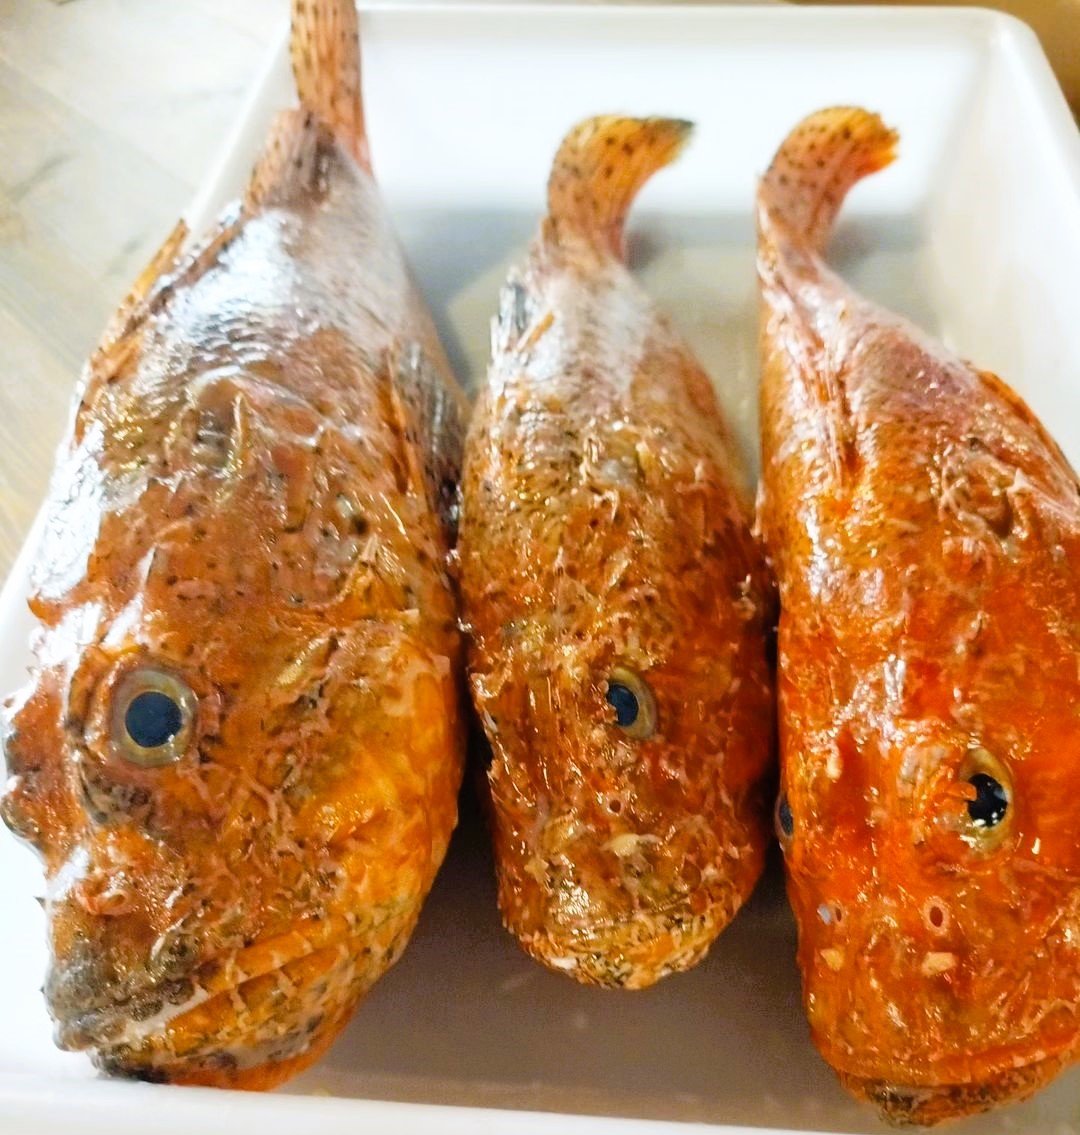 El peix que més m’agrada és el Cap Roig, un peix robust amb moltes espines i d’un color ataronjat i vermell tacat que el fa ben coneixedor.